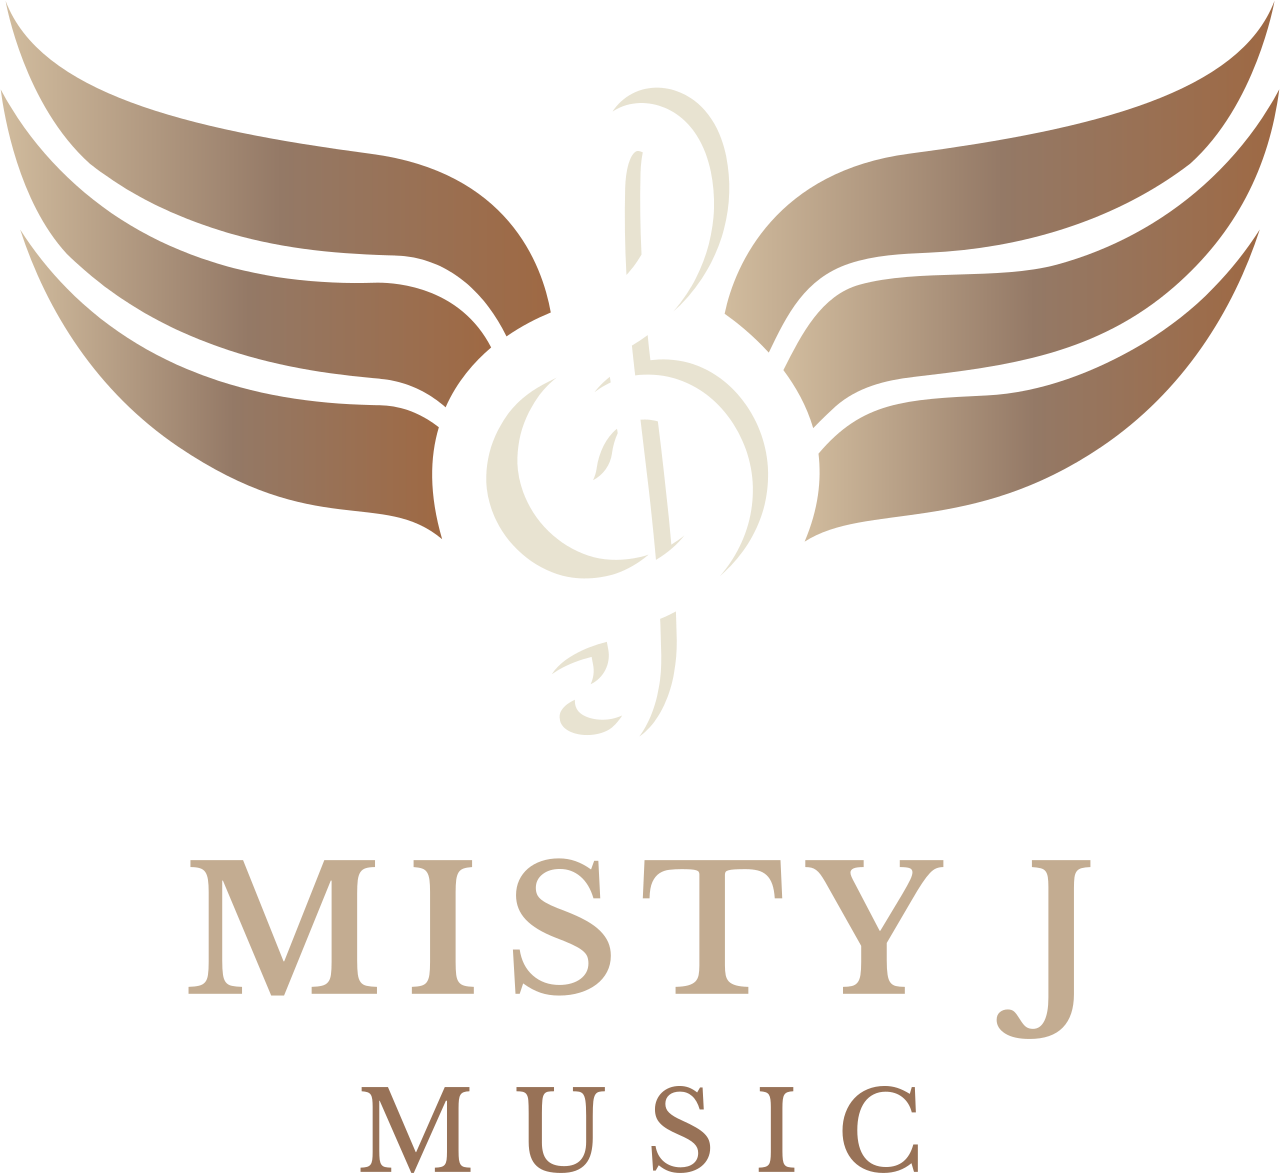 Misty J's web page